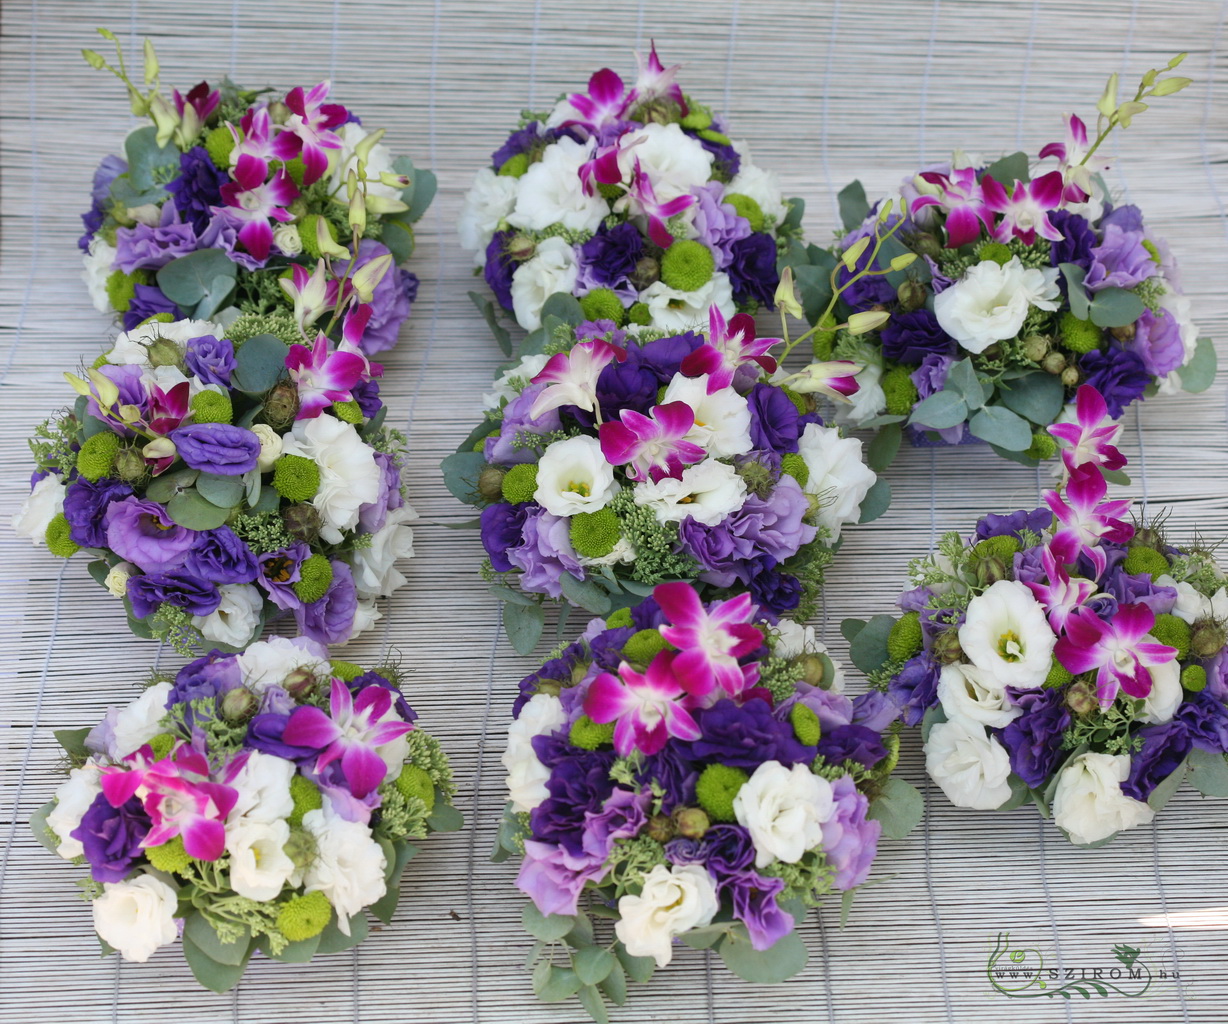 flower delivery Budapest - Round centerpiece 1 pc (lisianthus, dendrobium, purple), wedding